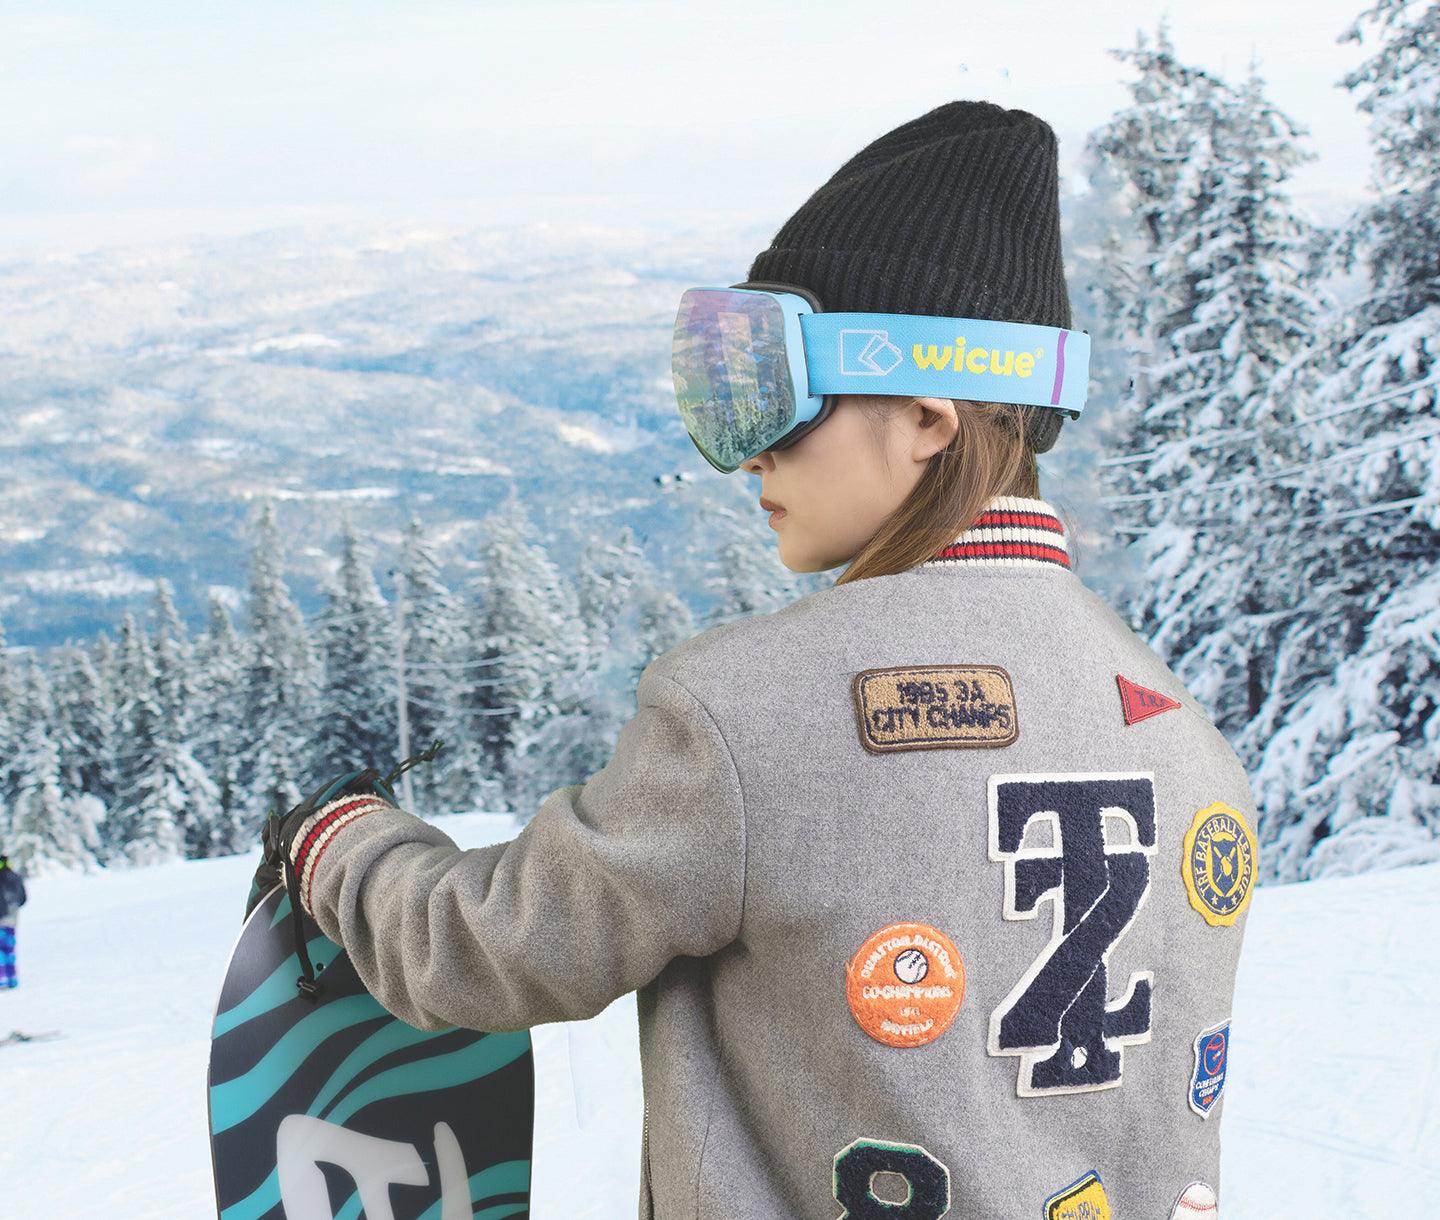 Lbq Lunettes de ski Sports d'hiver Masque de ski coupe-vent extérieur  Snowboard Neige Ski Lunettes Protection UV Lunettes de ski